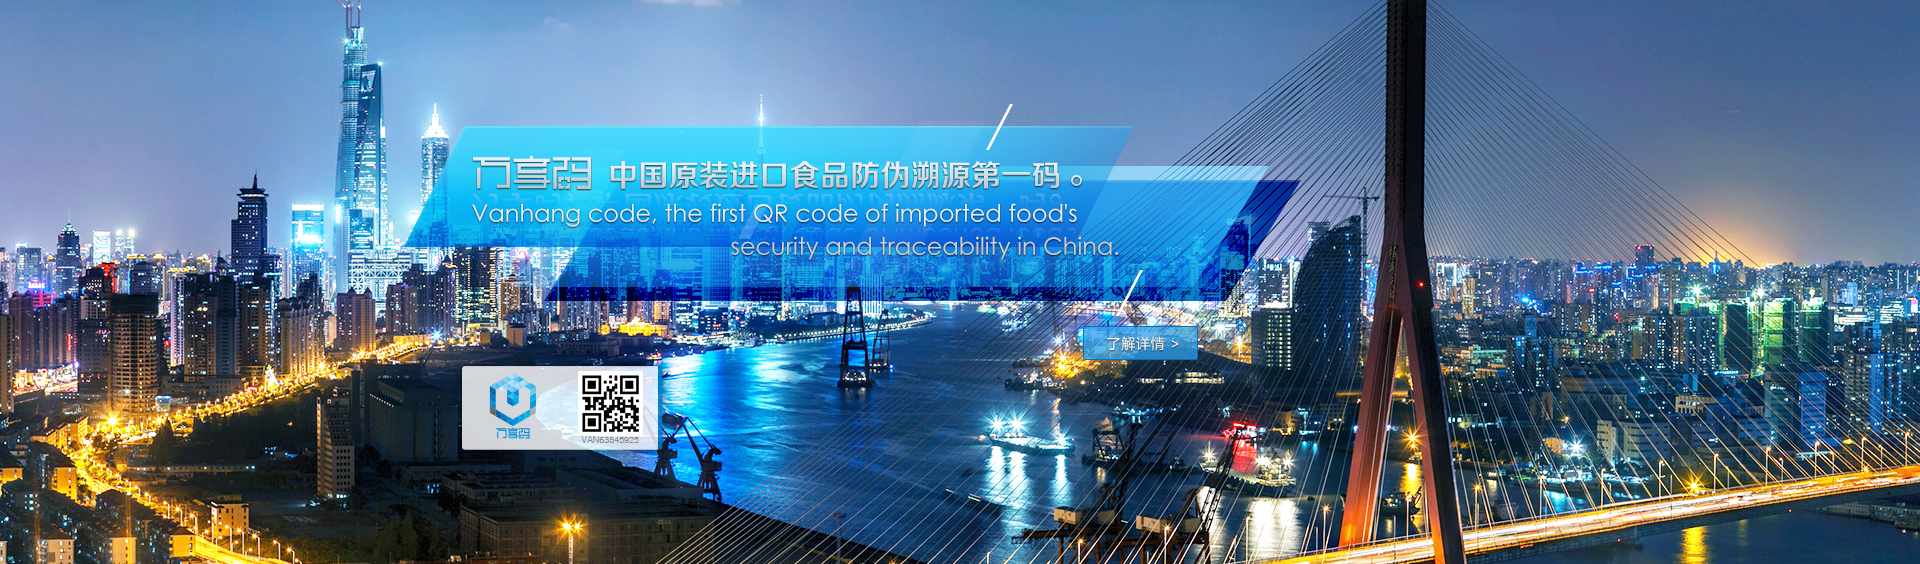 天津港进口食品需要办理什么手续